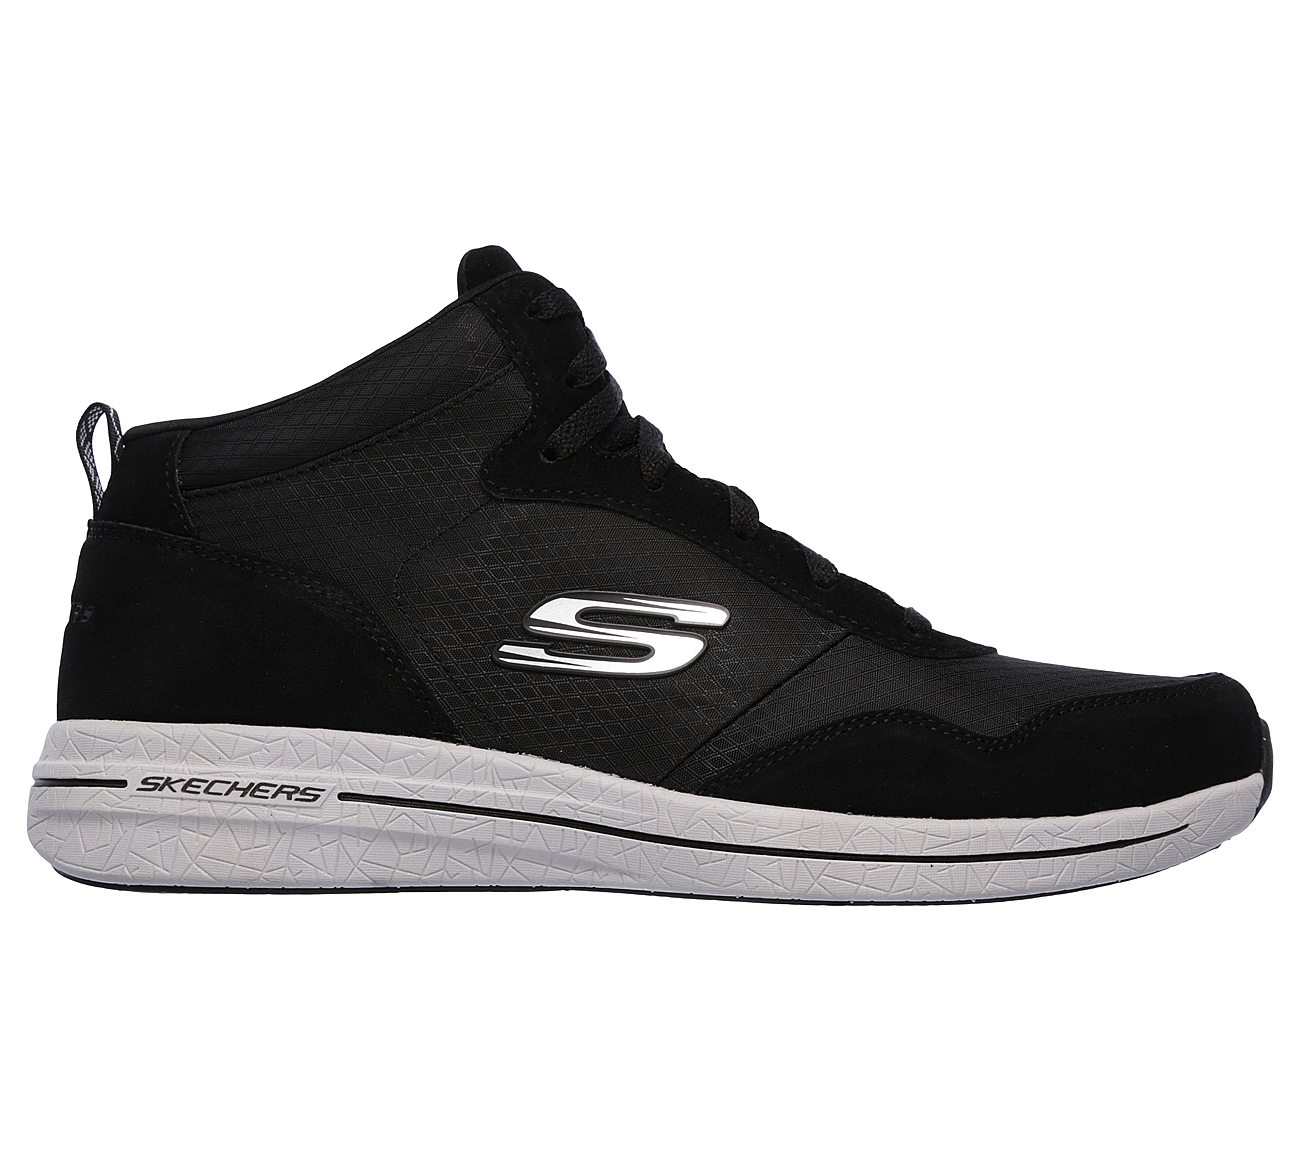 Swillin SKECHERS Sport Shoes